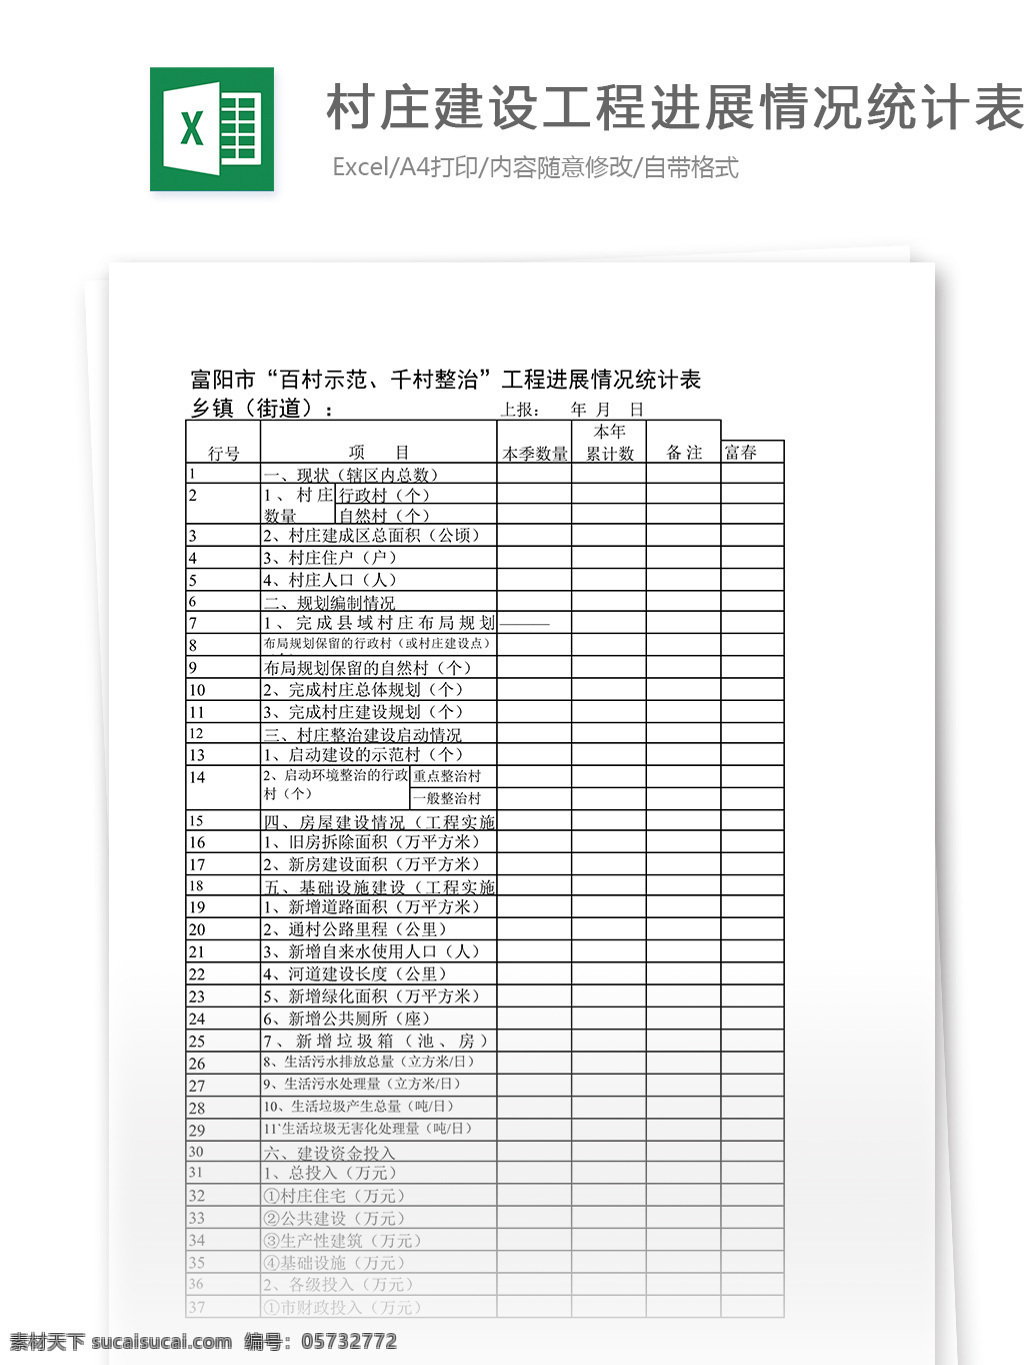 村庄 建设工程 进展 情况 统计表 表格 表格模板 表格设计 图表 工程